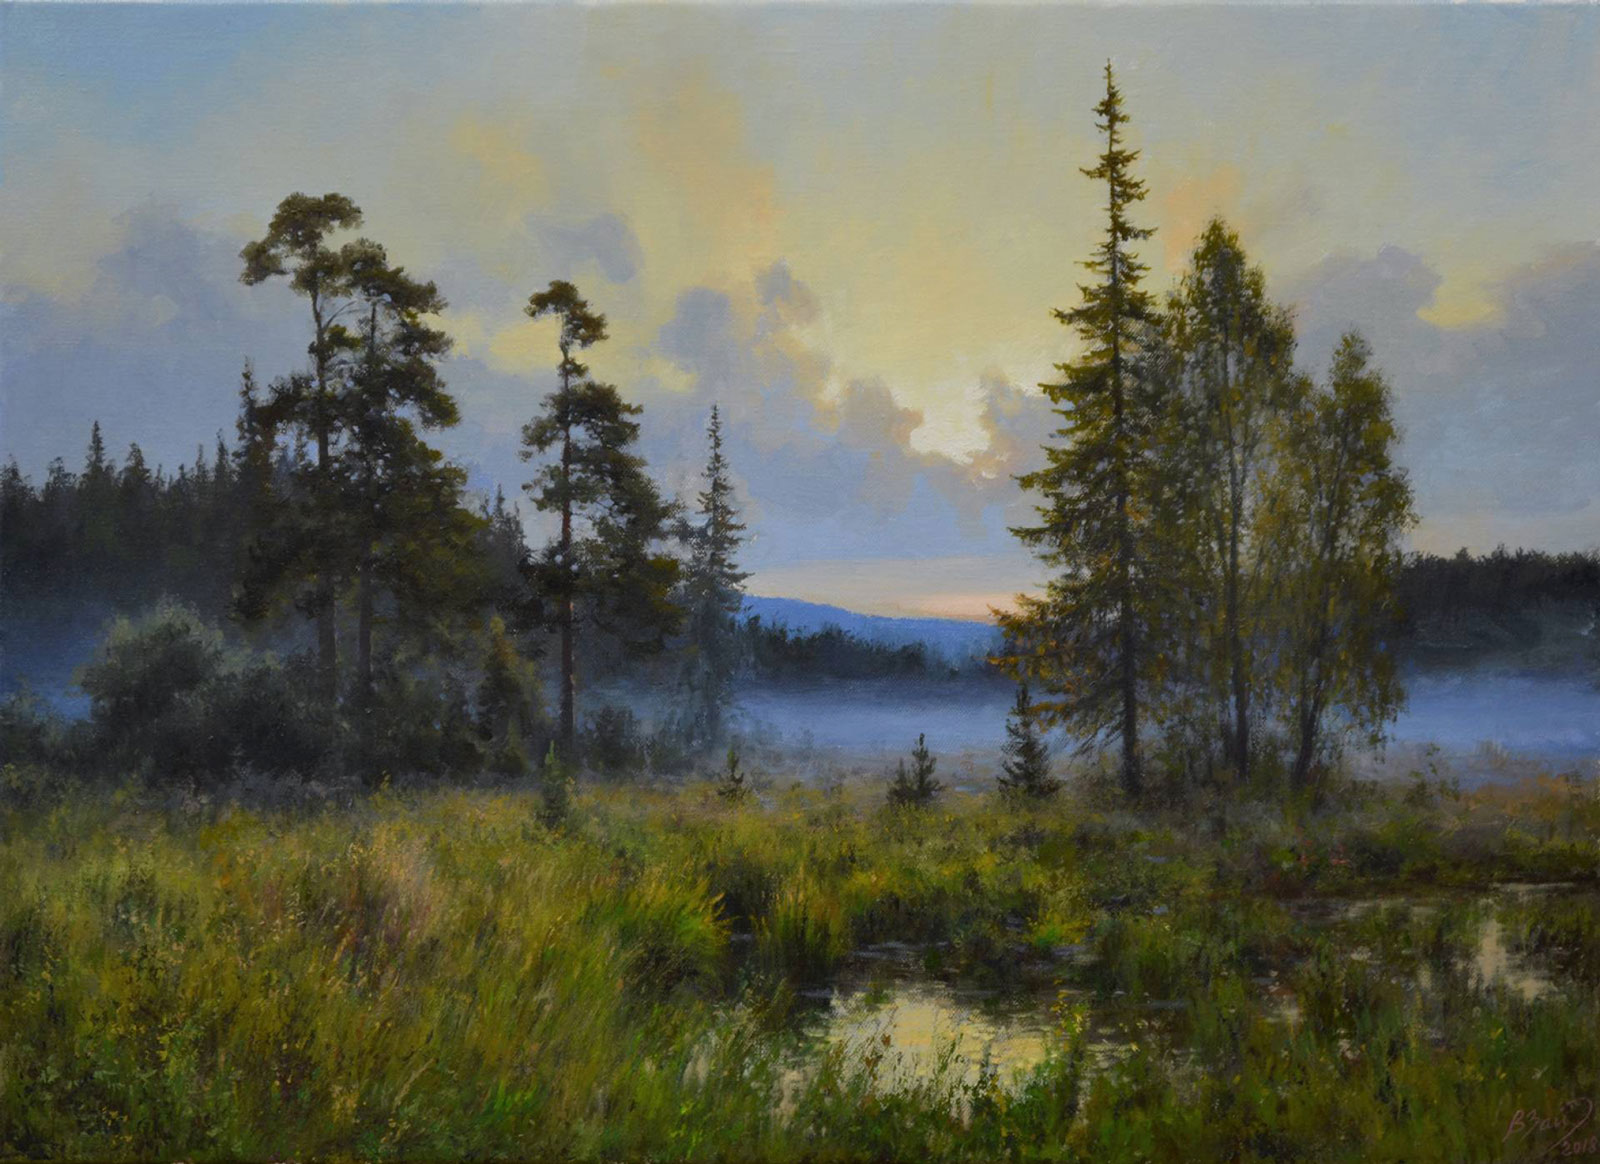 On the Sunrise - 1, Vadim Zainullin, Buy the painting Oil